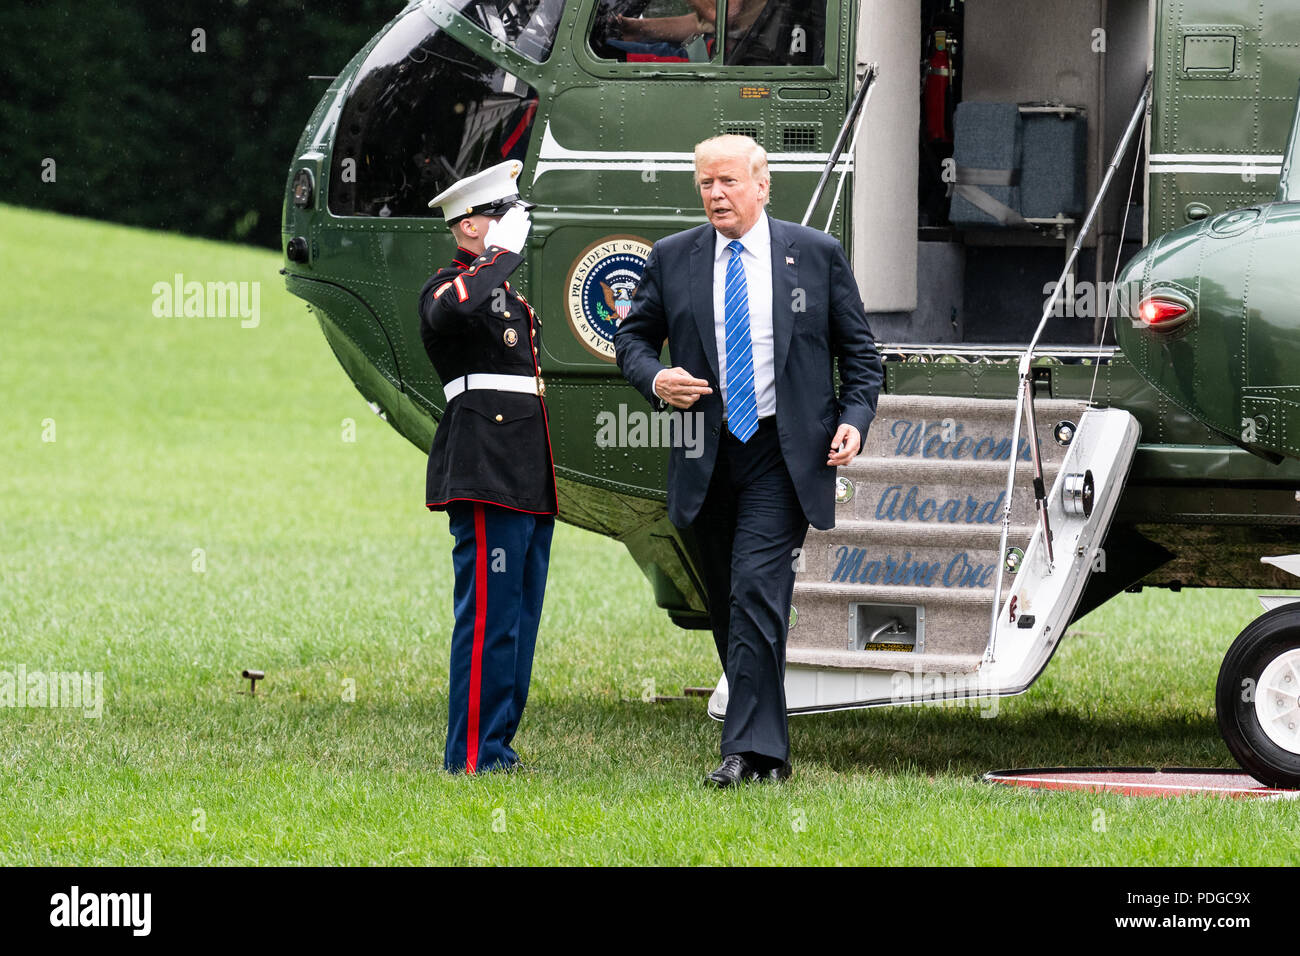 Le retour du Président Donald Trump dans la soirée par un hélicoptère de la Marine à la Maison Blanche à Washington, DC Le 24 juillet 2018 Banque D'Images